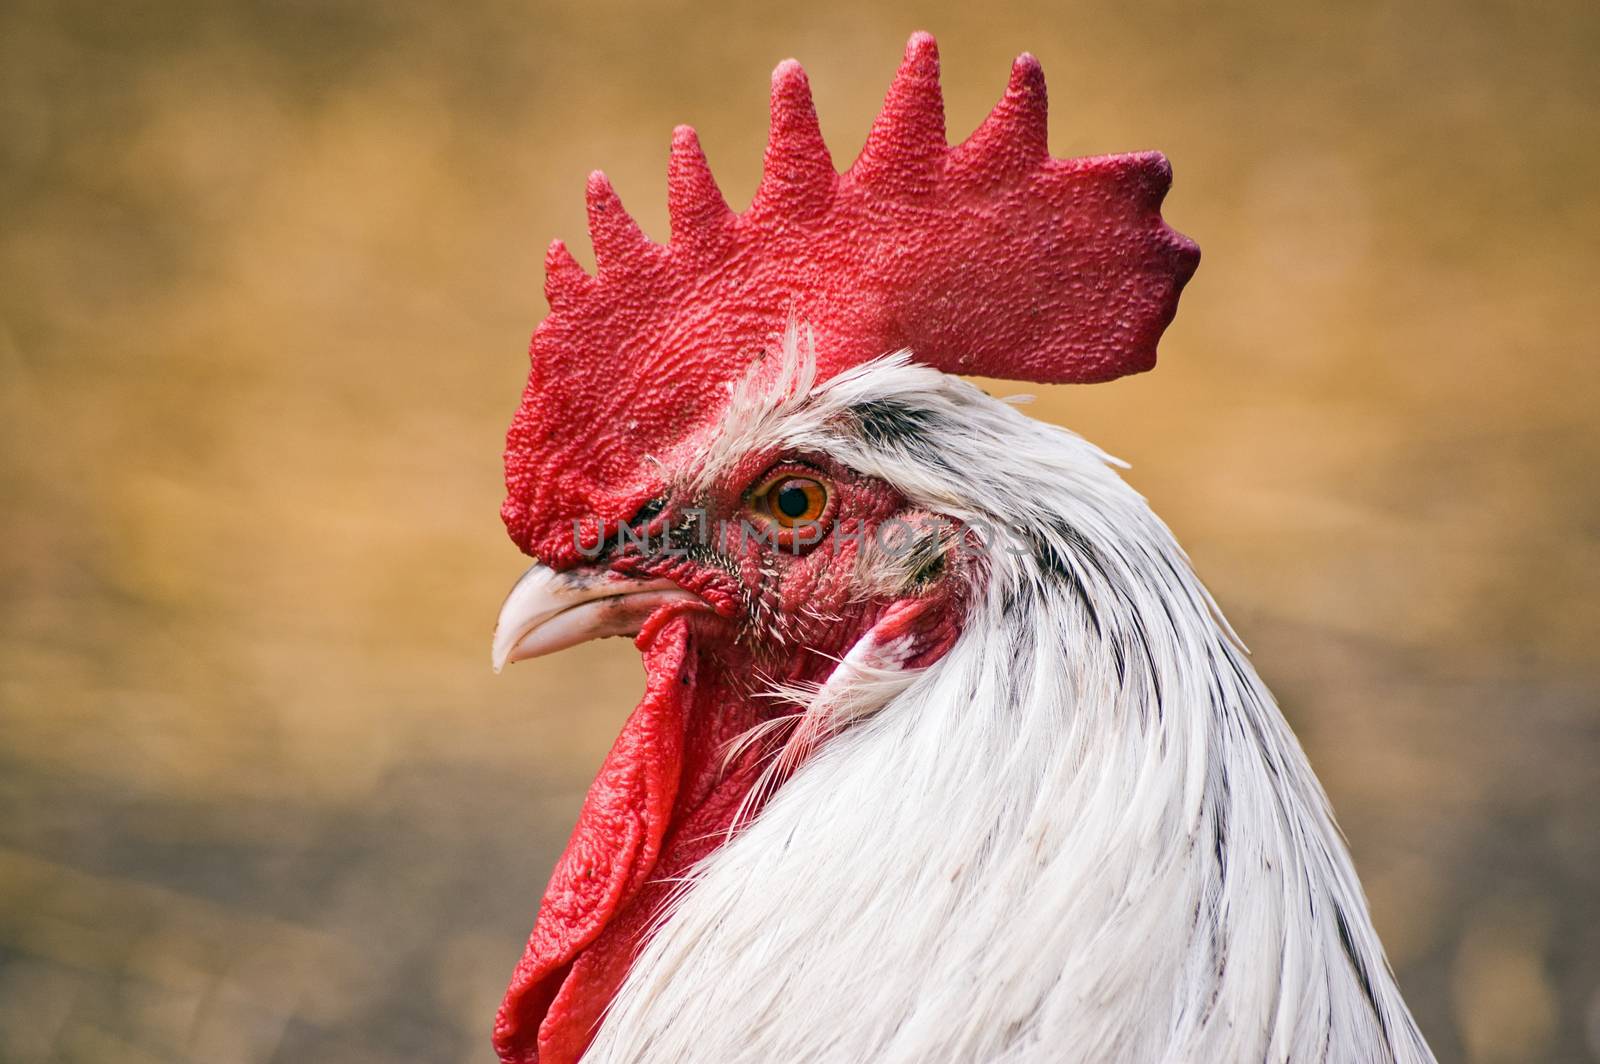 Alert face of a cockerel, rooster, in a farmyard.